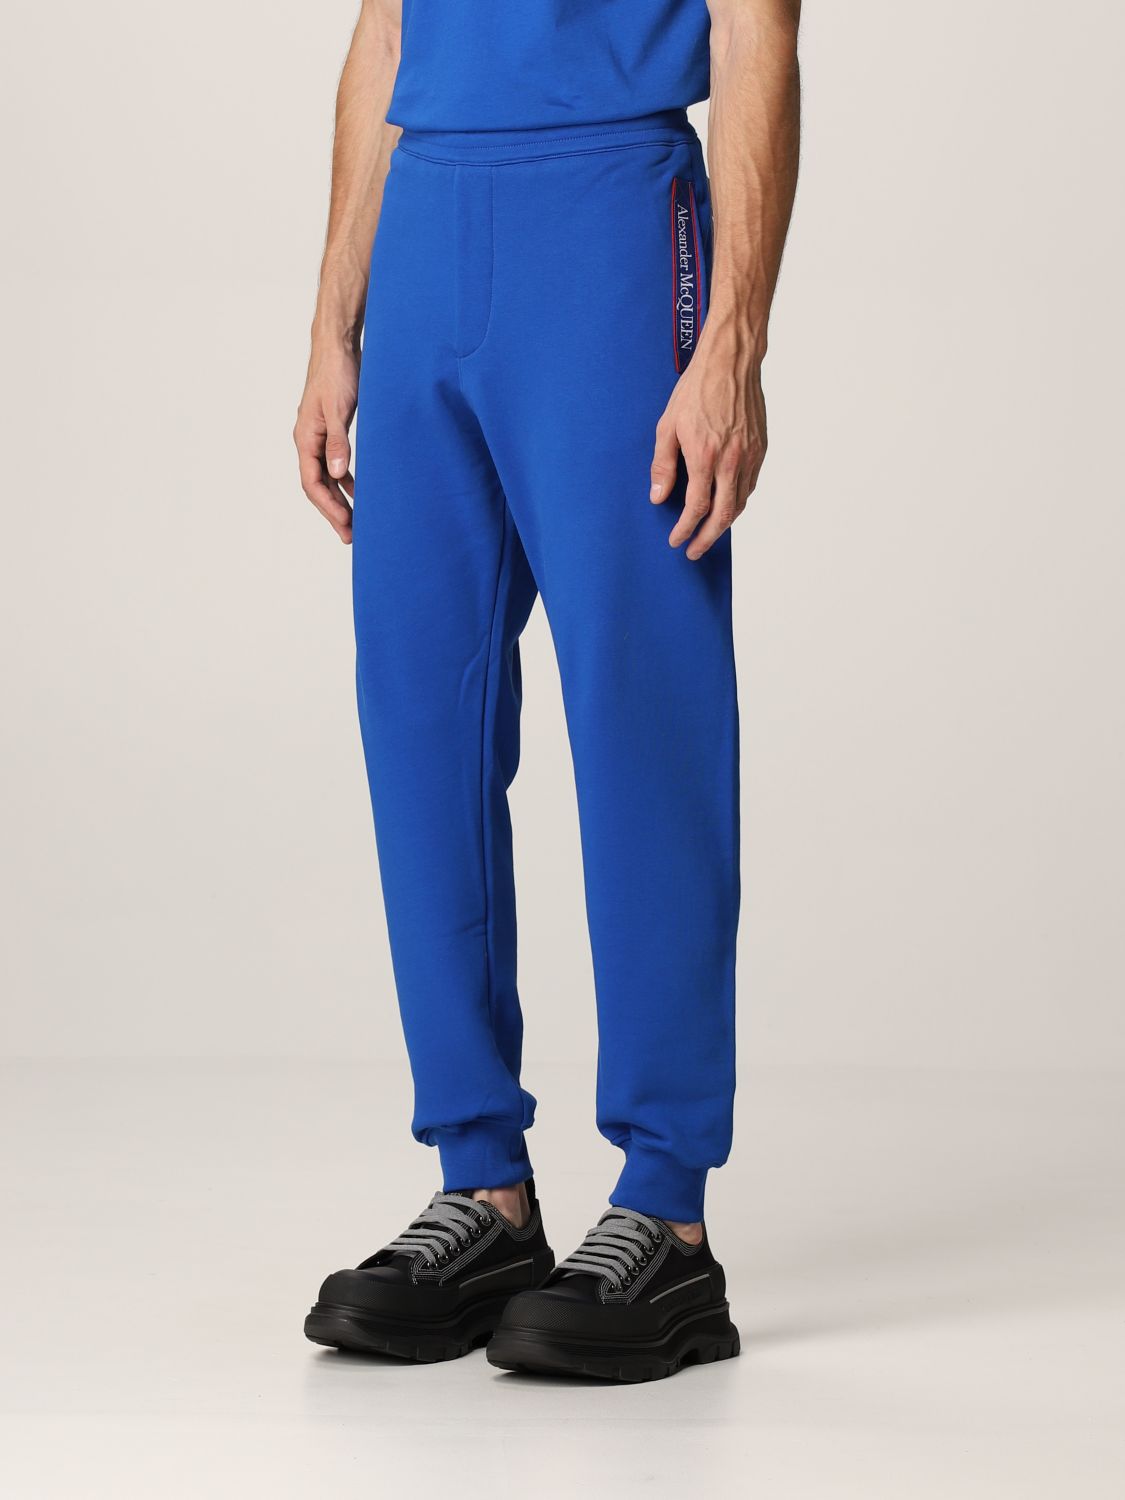 ALEXANDER MCQUEEN: jogging pants with logo - Blue | Alexander Mcqueen ...